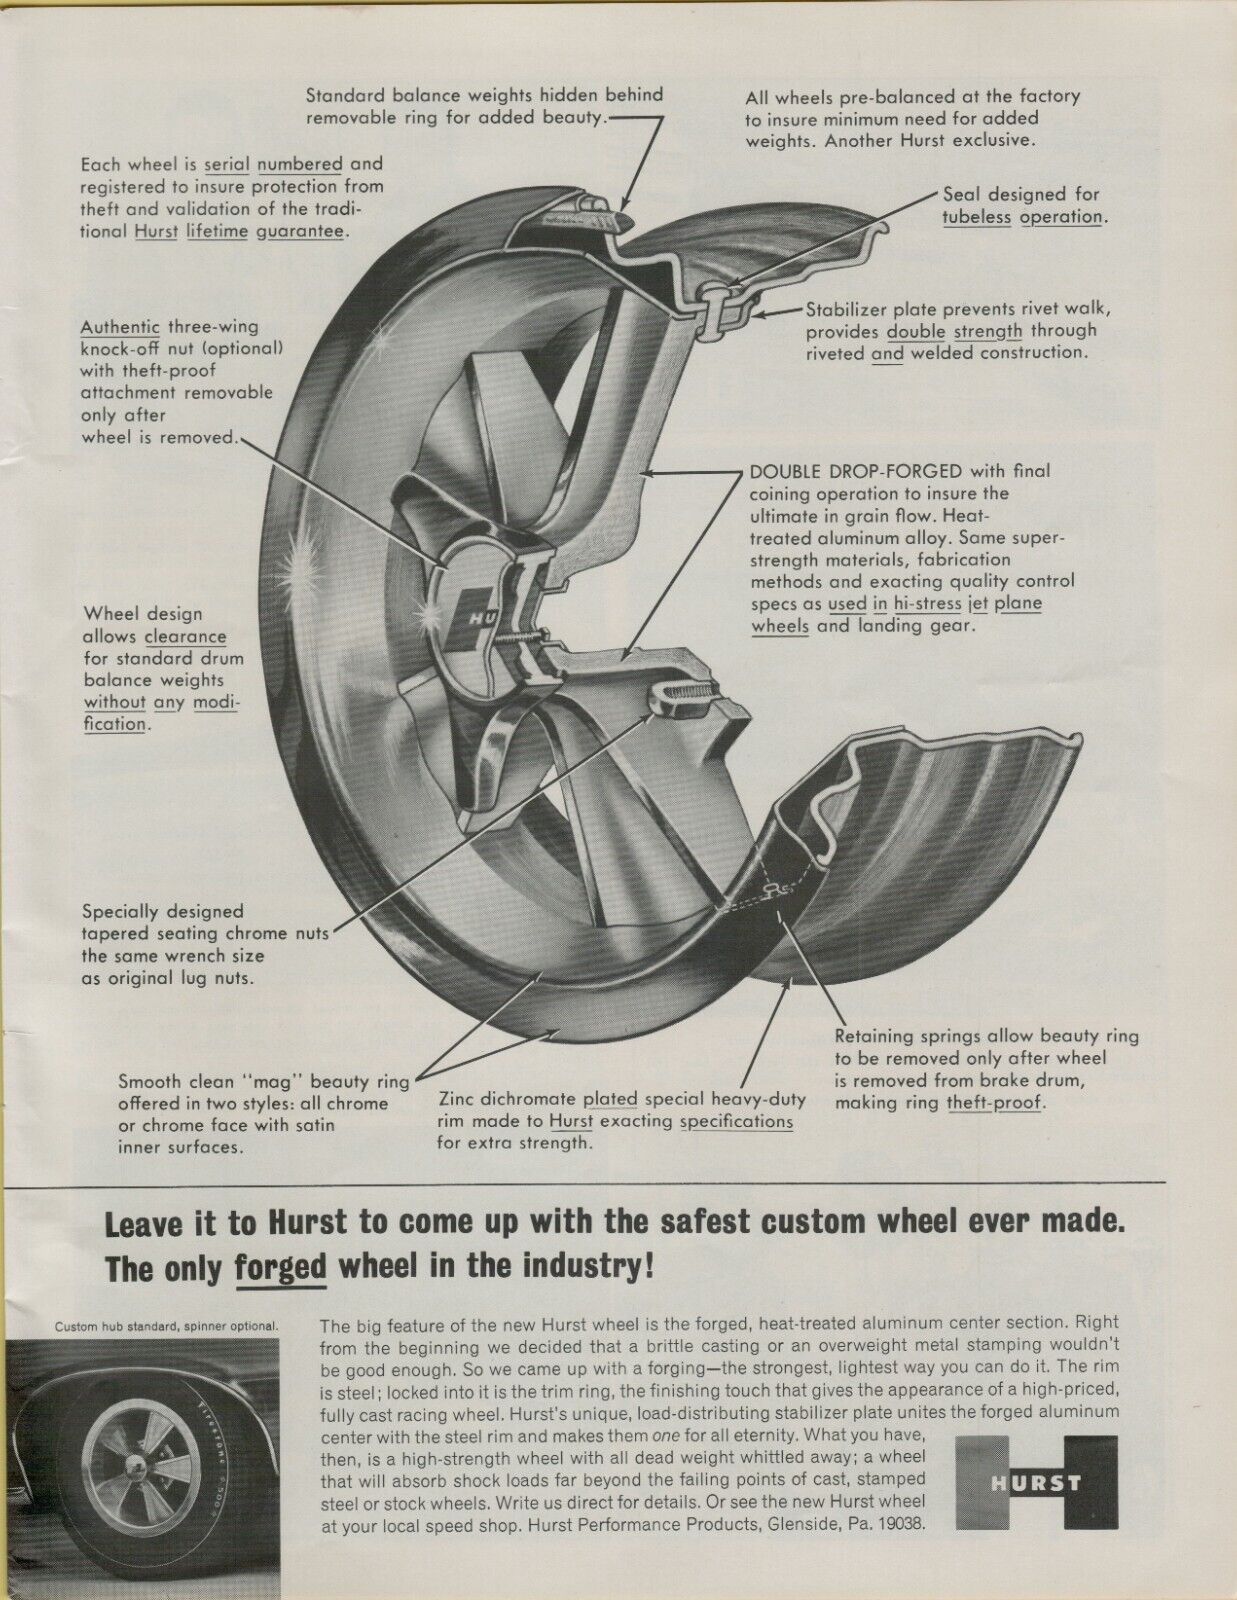 1965 Hurst Custom Forged Wheel Three Wing Knock Off Safest Vintage Print Ad